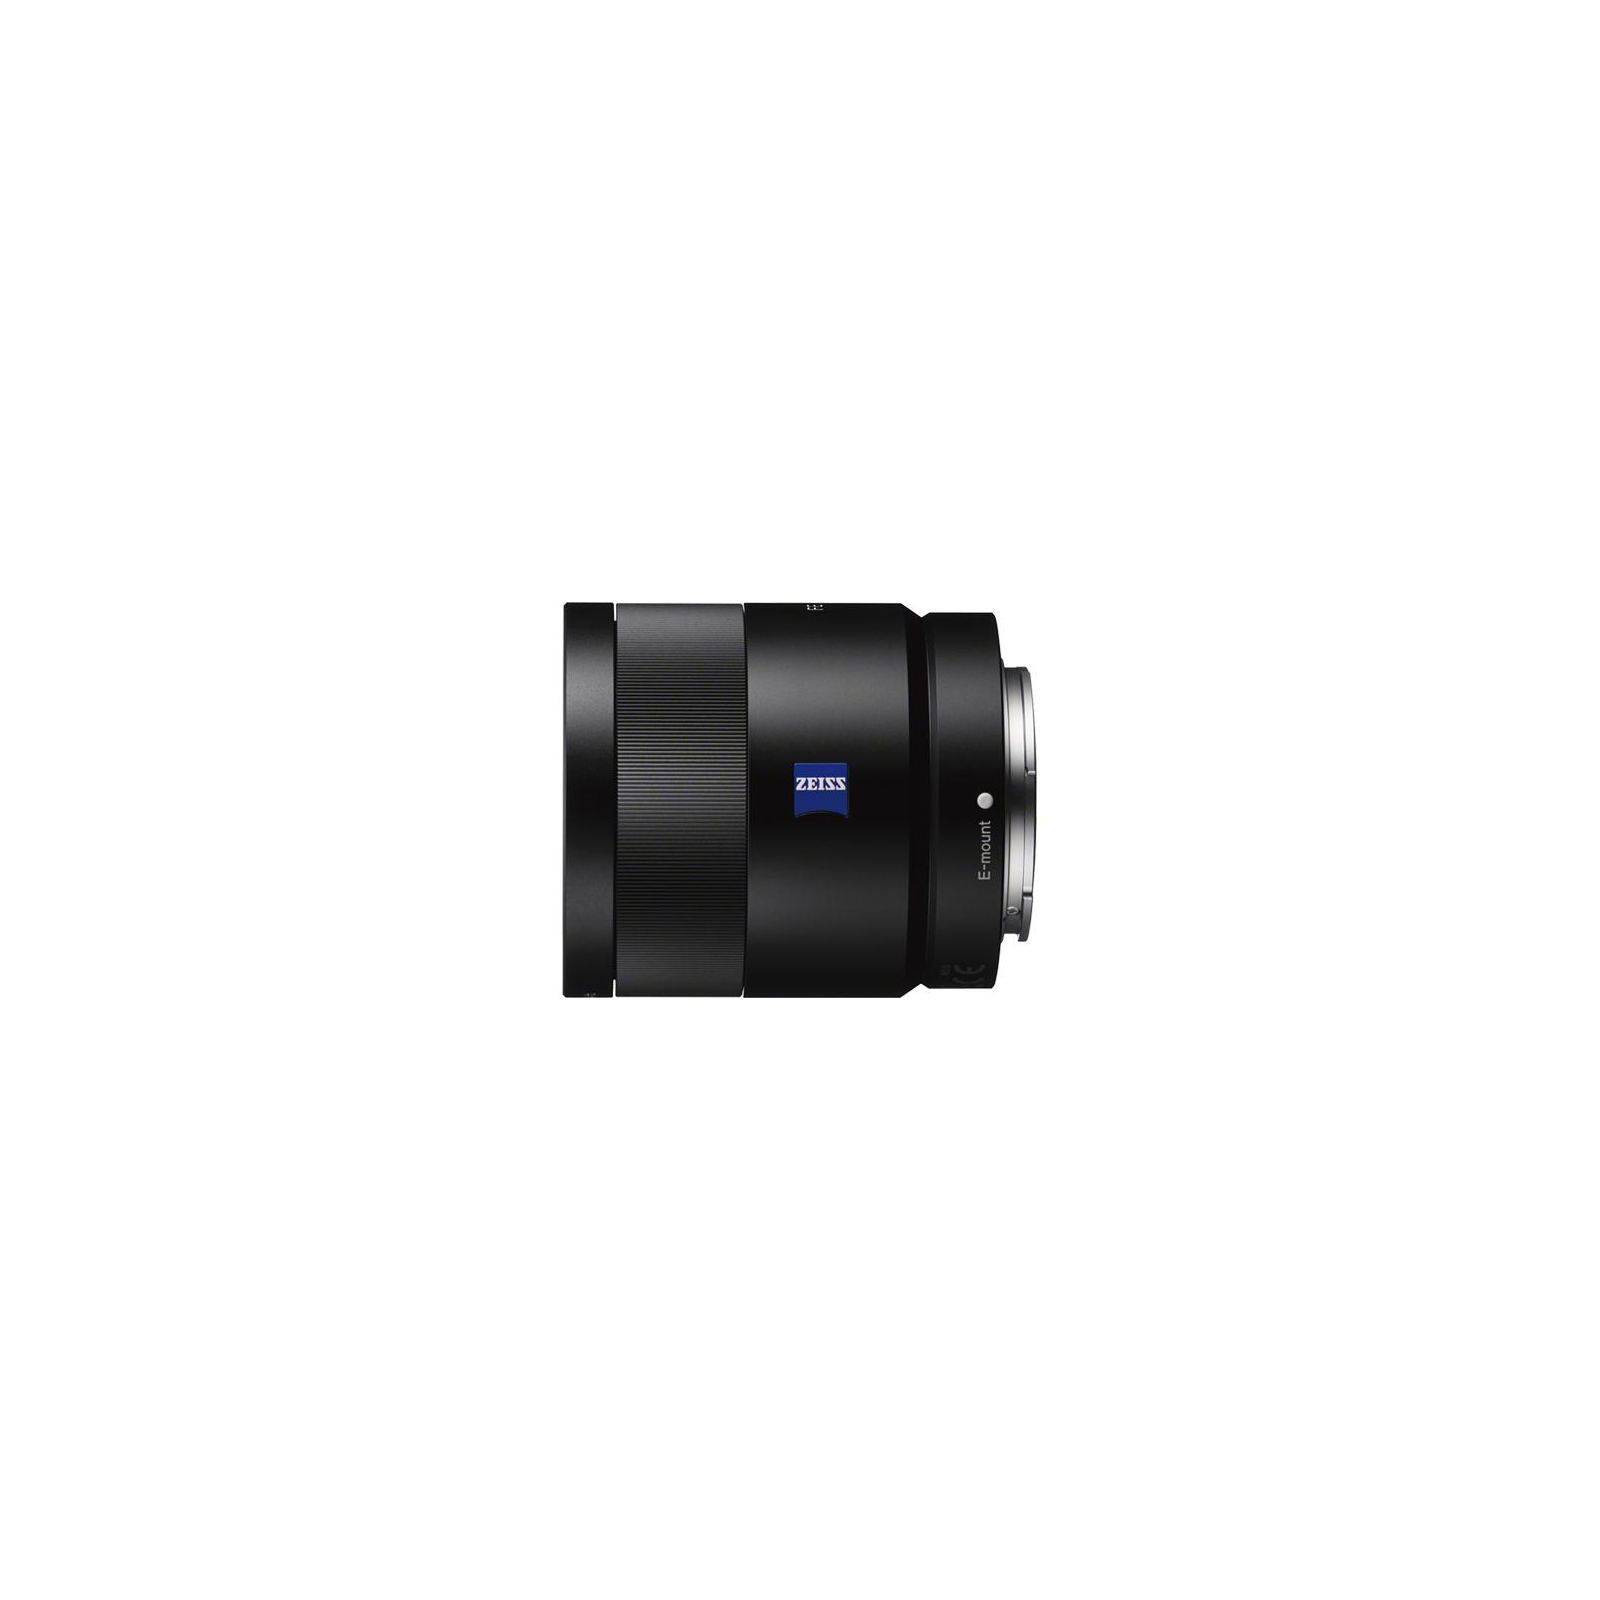 Об'єктив Sony 55mm f/1.8 Carl Zeiss for NEX FF (SEL55F18Z.AE) зображення 3